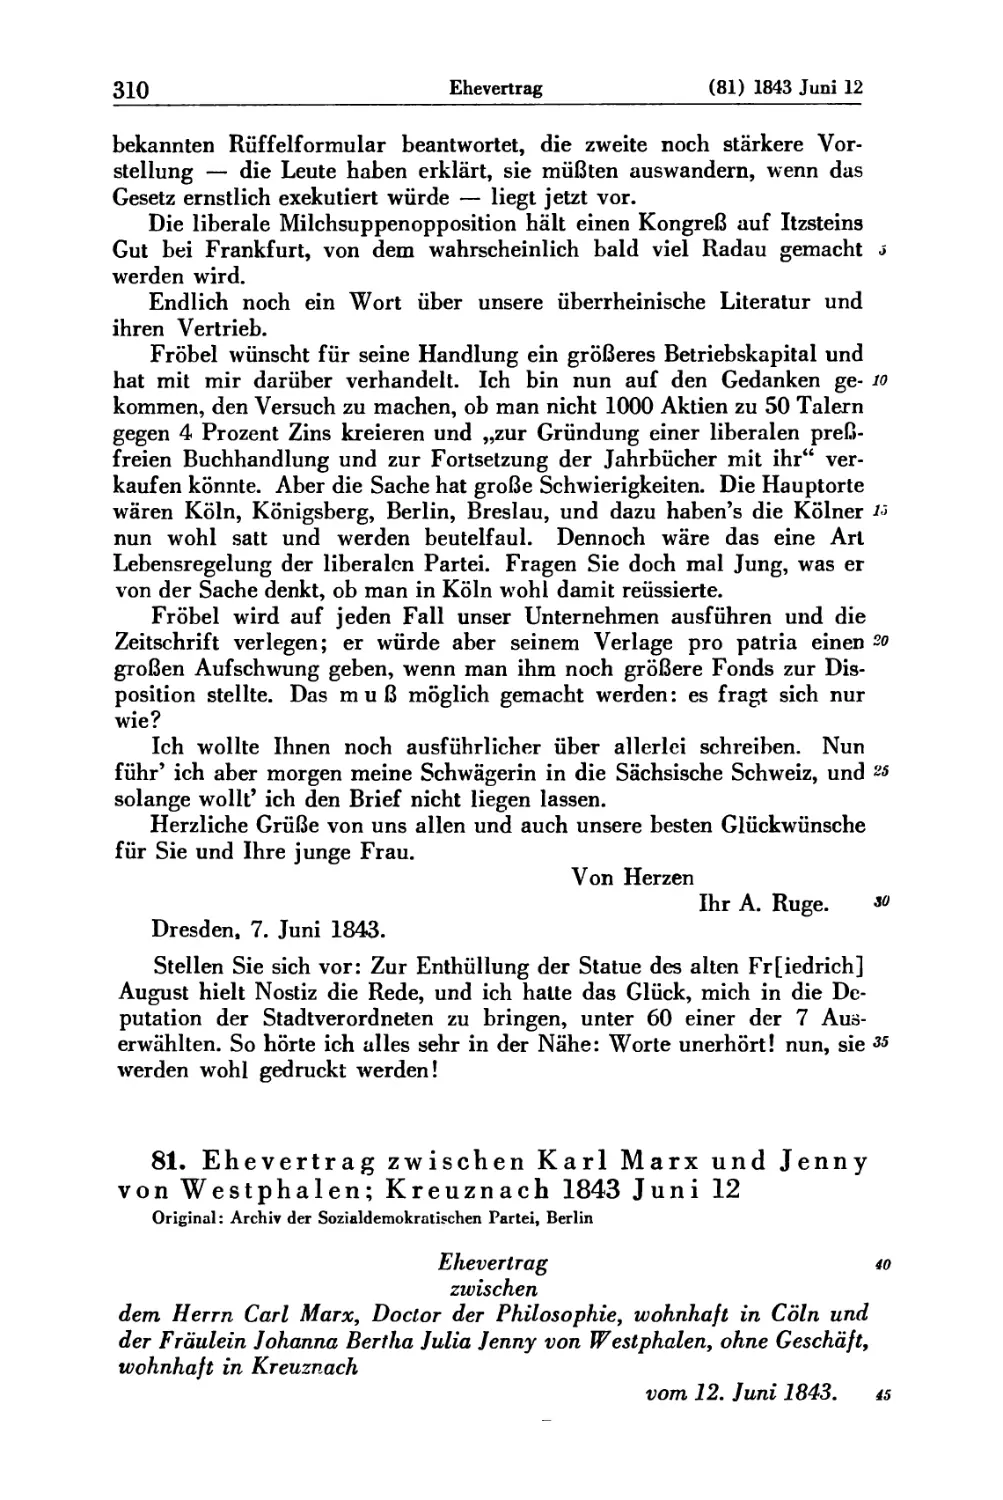 81. Ehevertrag zwischen Karl Marx und Jenny von Westphalen; Kreuznach 1843 Juni 12